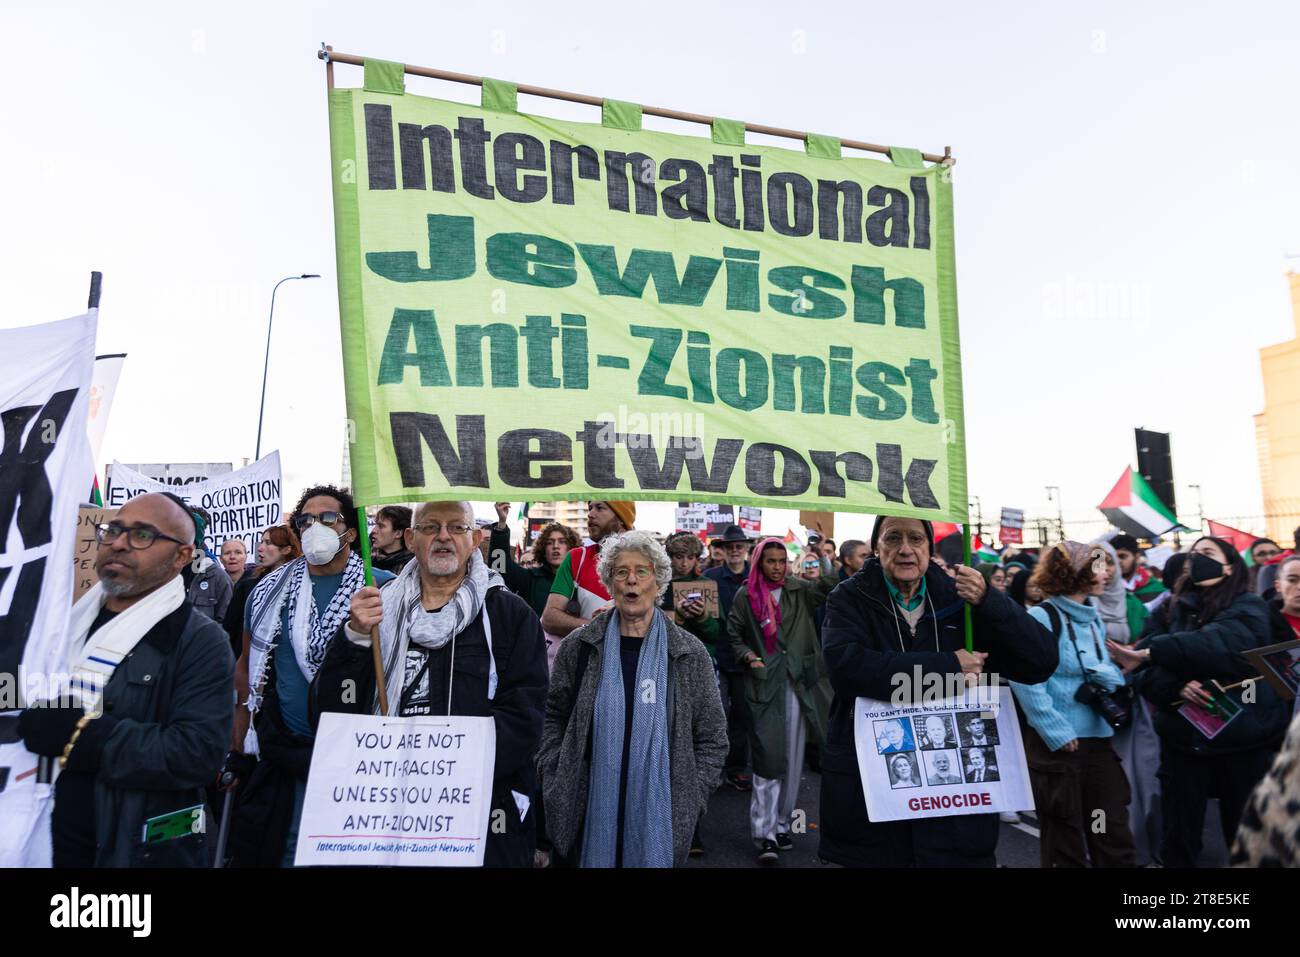 Rassemblement pro Palestine, manifestation nationale pour la Palestine à Londres, Royaume-Uni, traversant le pont Vauxhall. Signe international juif anti-sioniste Banque D'Images